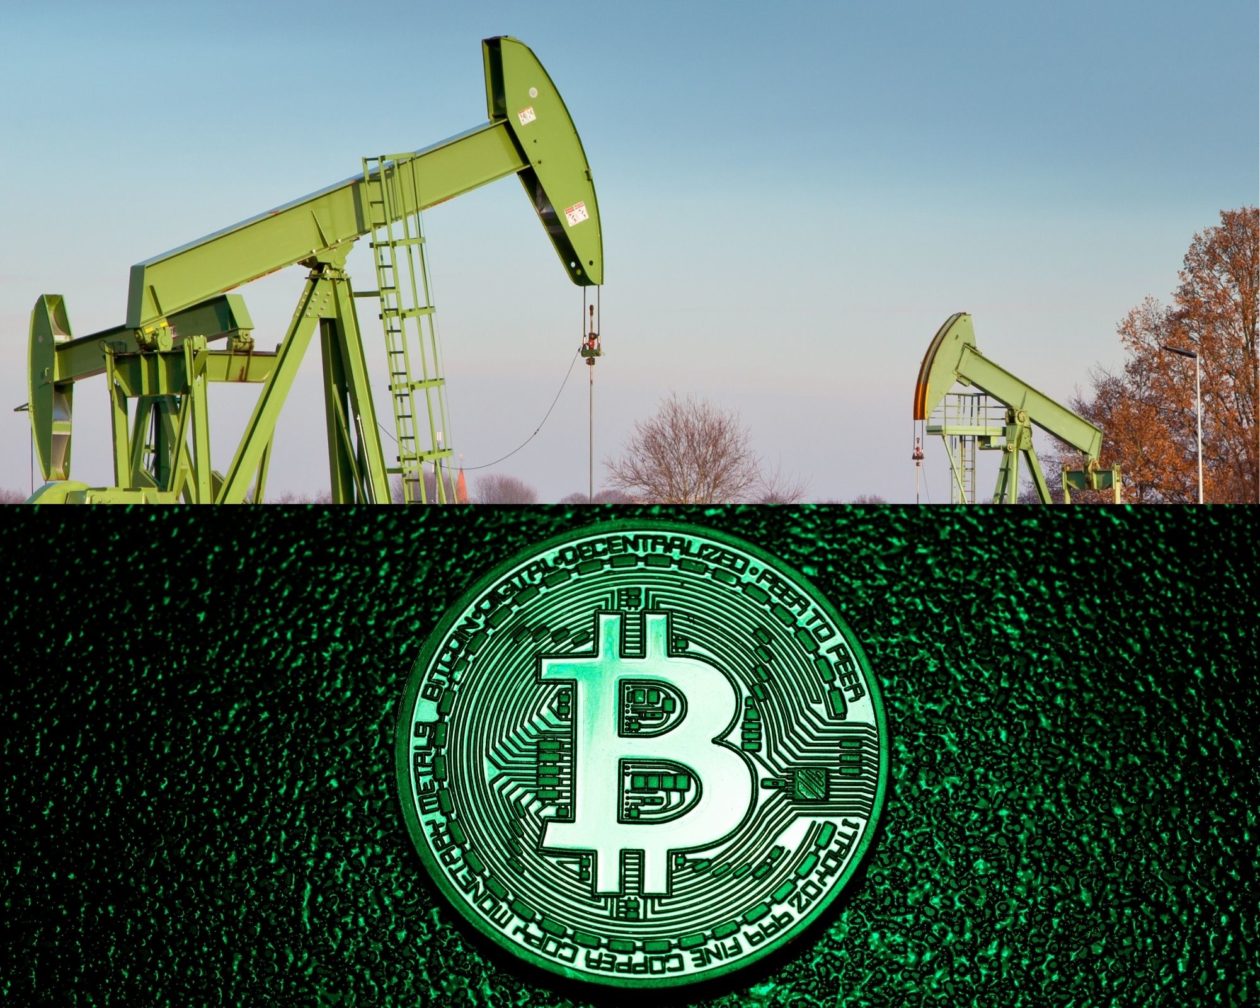 Bitcoin and Energy Oil derricks